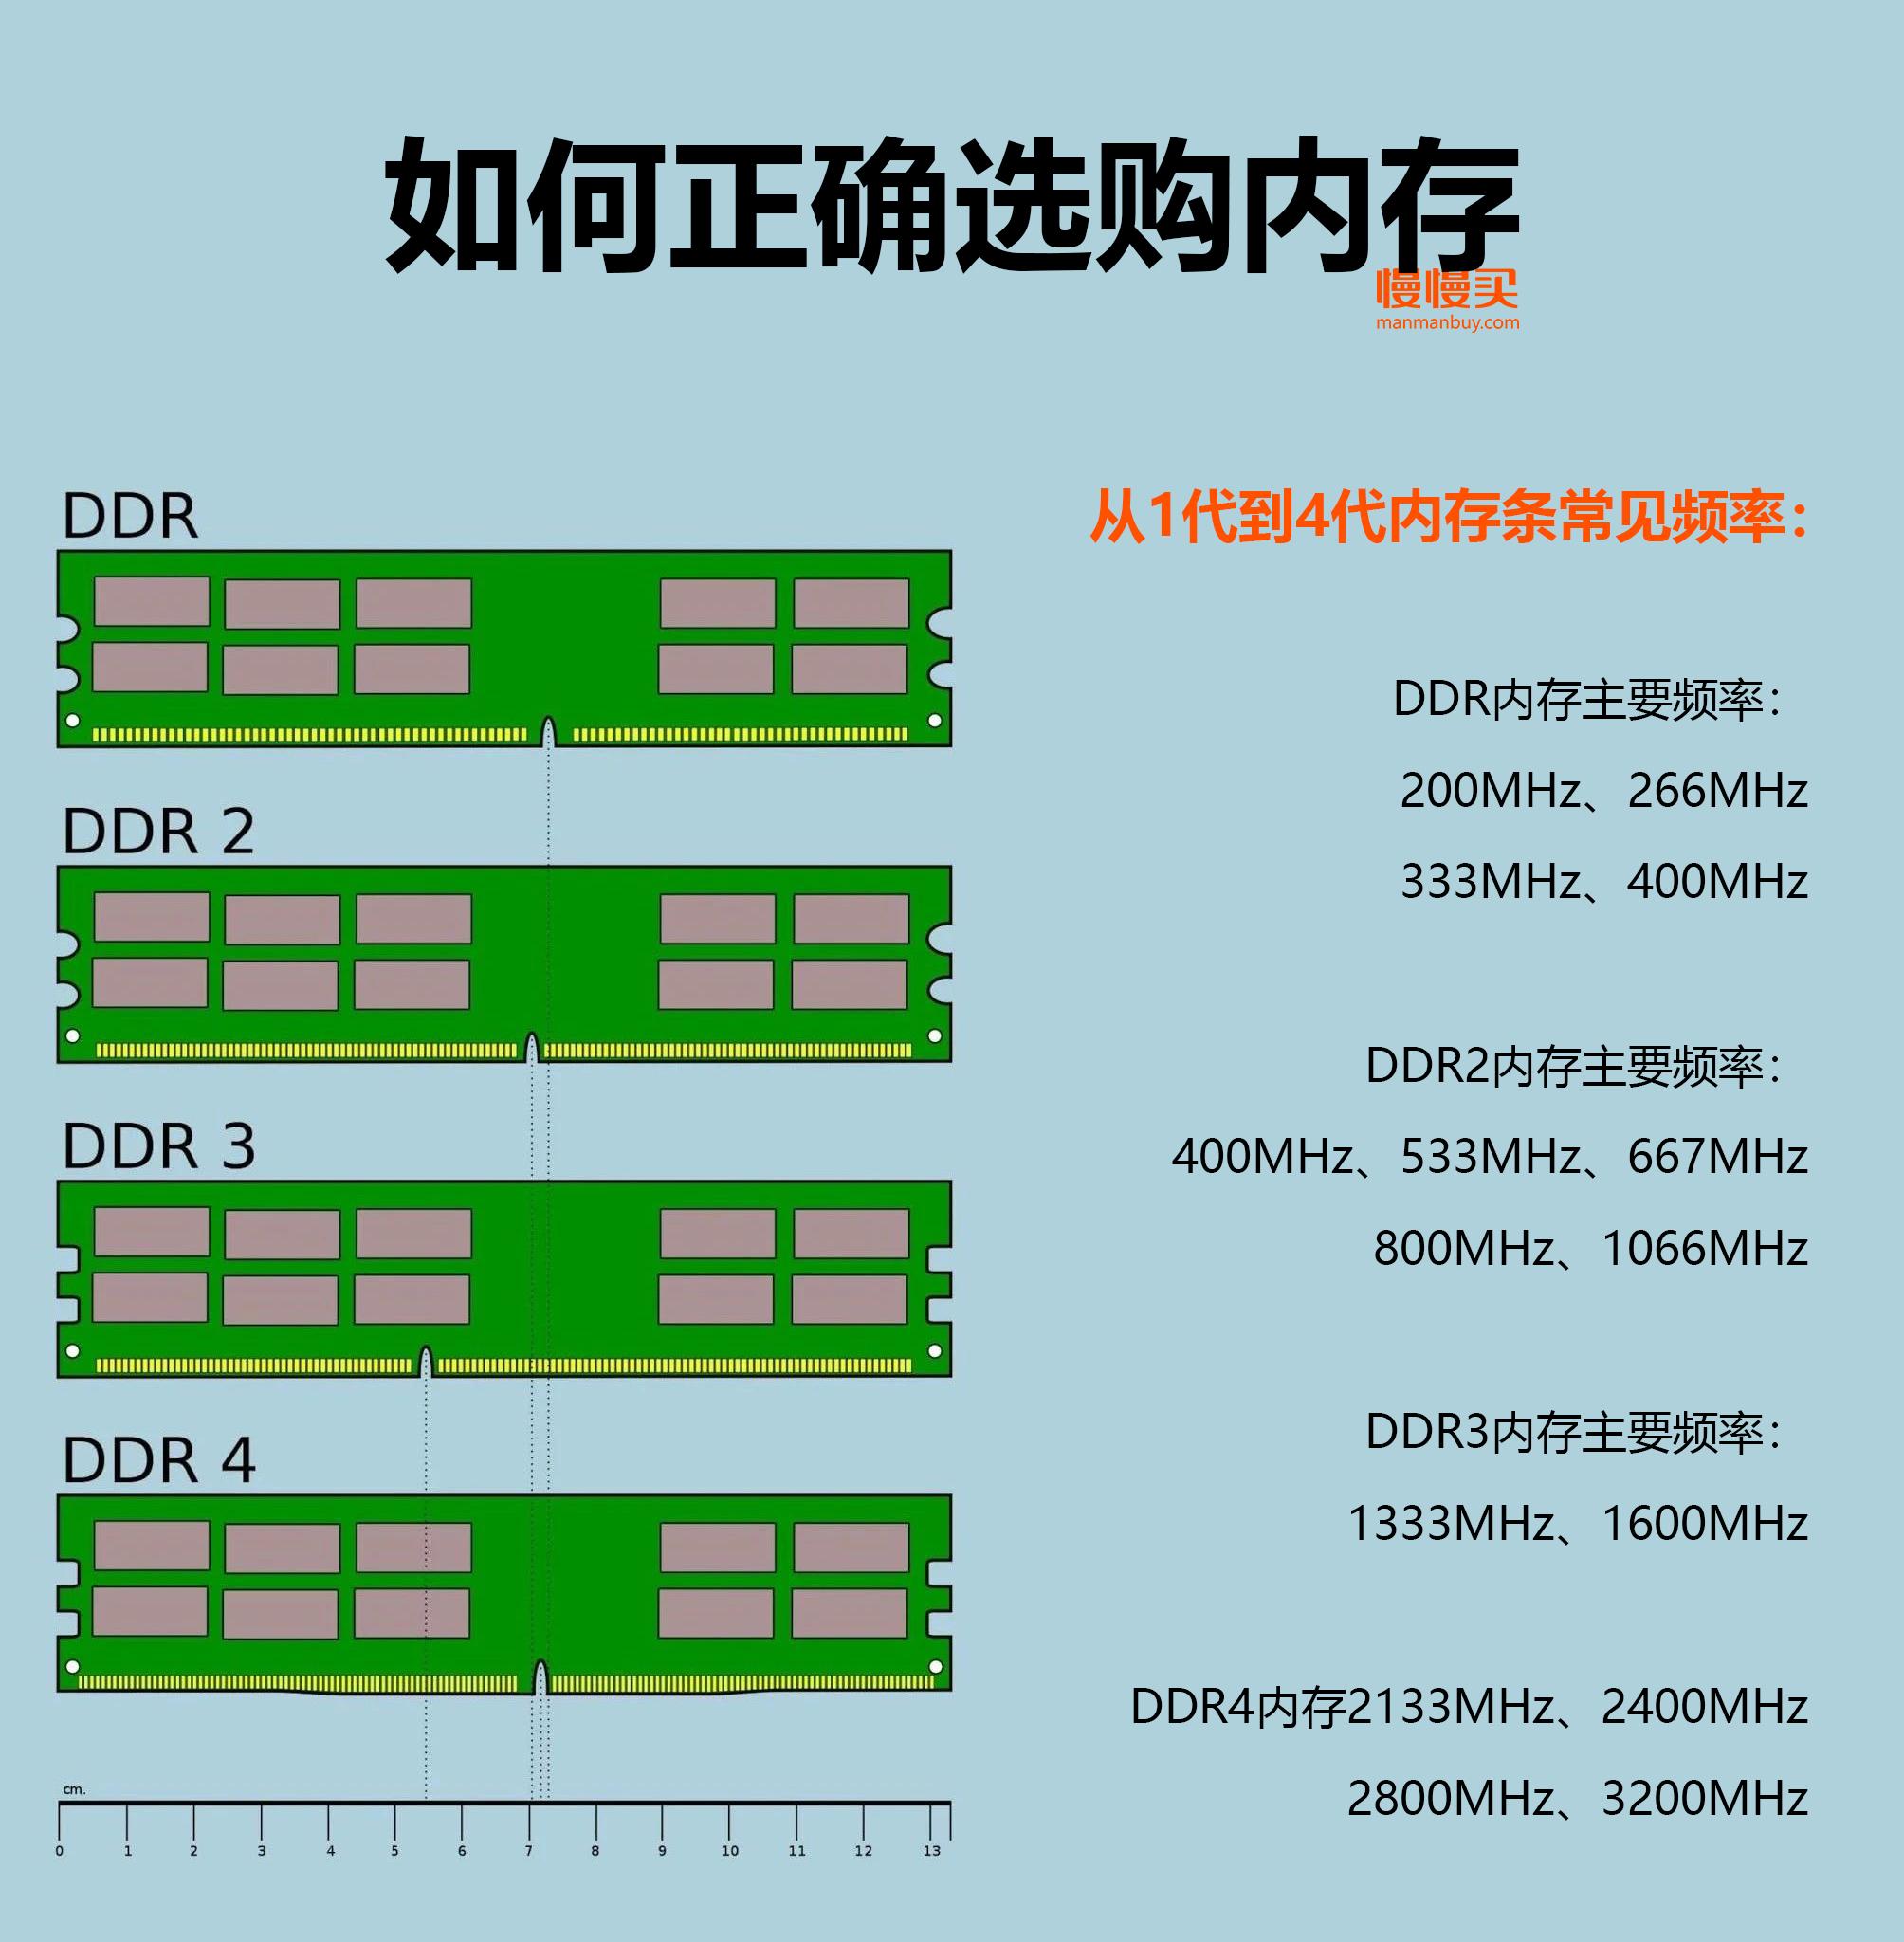 DDR2 1066：从辉煌到淡出，存储设备的时代变迁  第7张